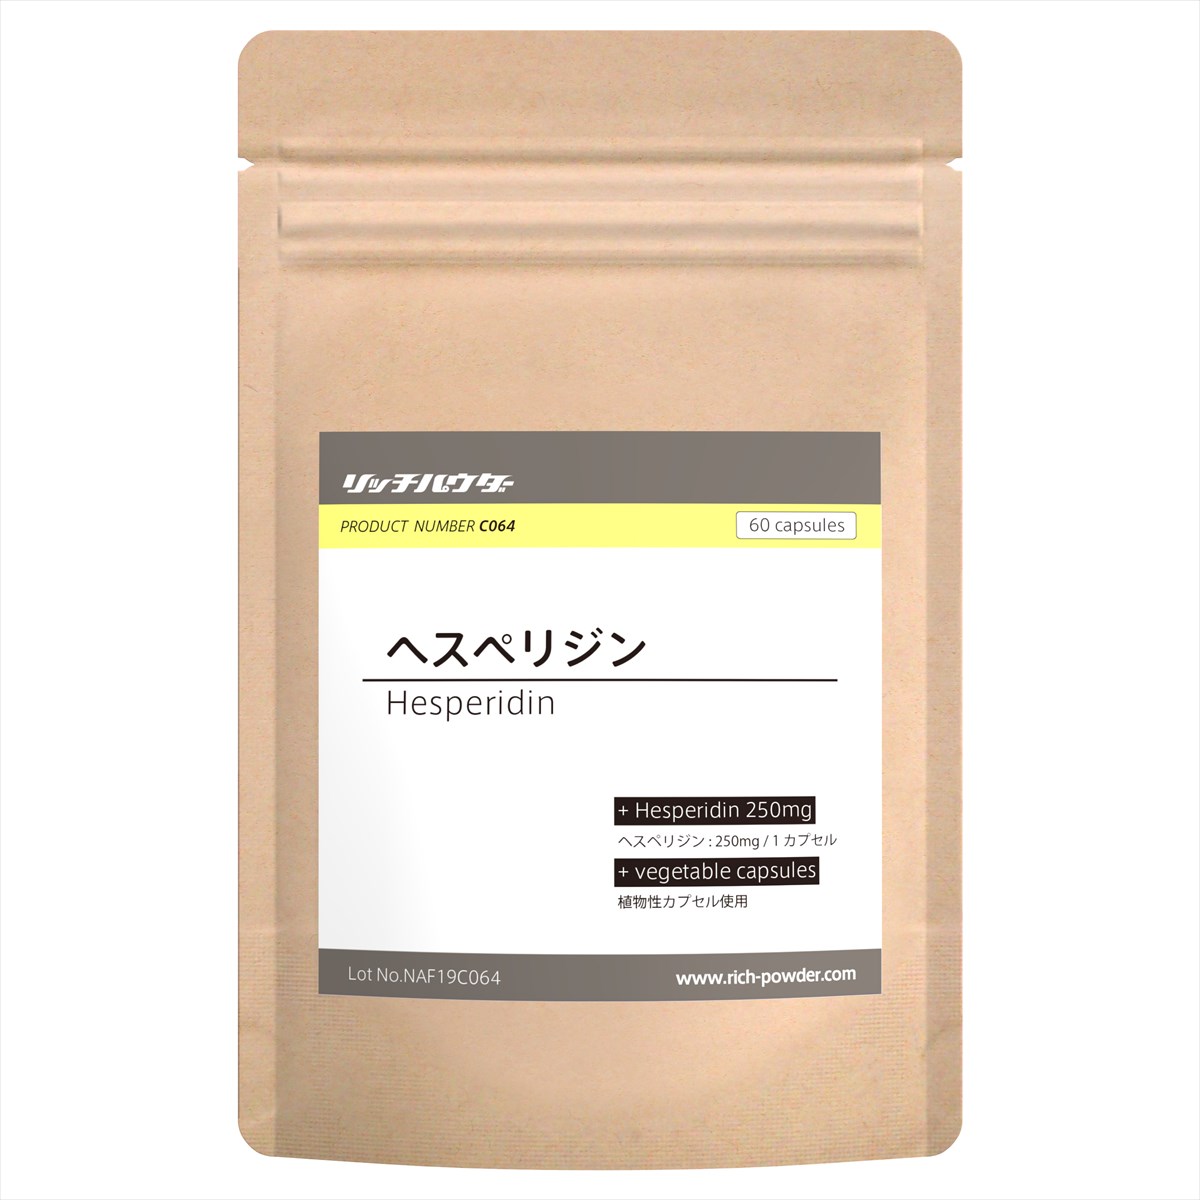 ヘスペリジン サプリ ビタミンP ヘスペリジン250mg含有 国内生産品 30日分 60カプセル 